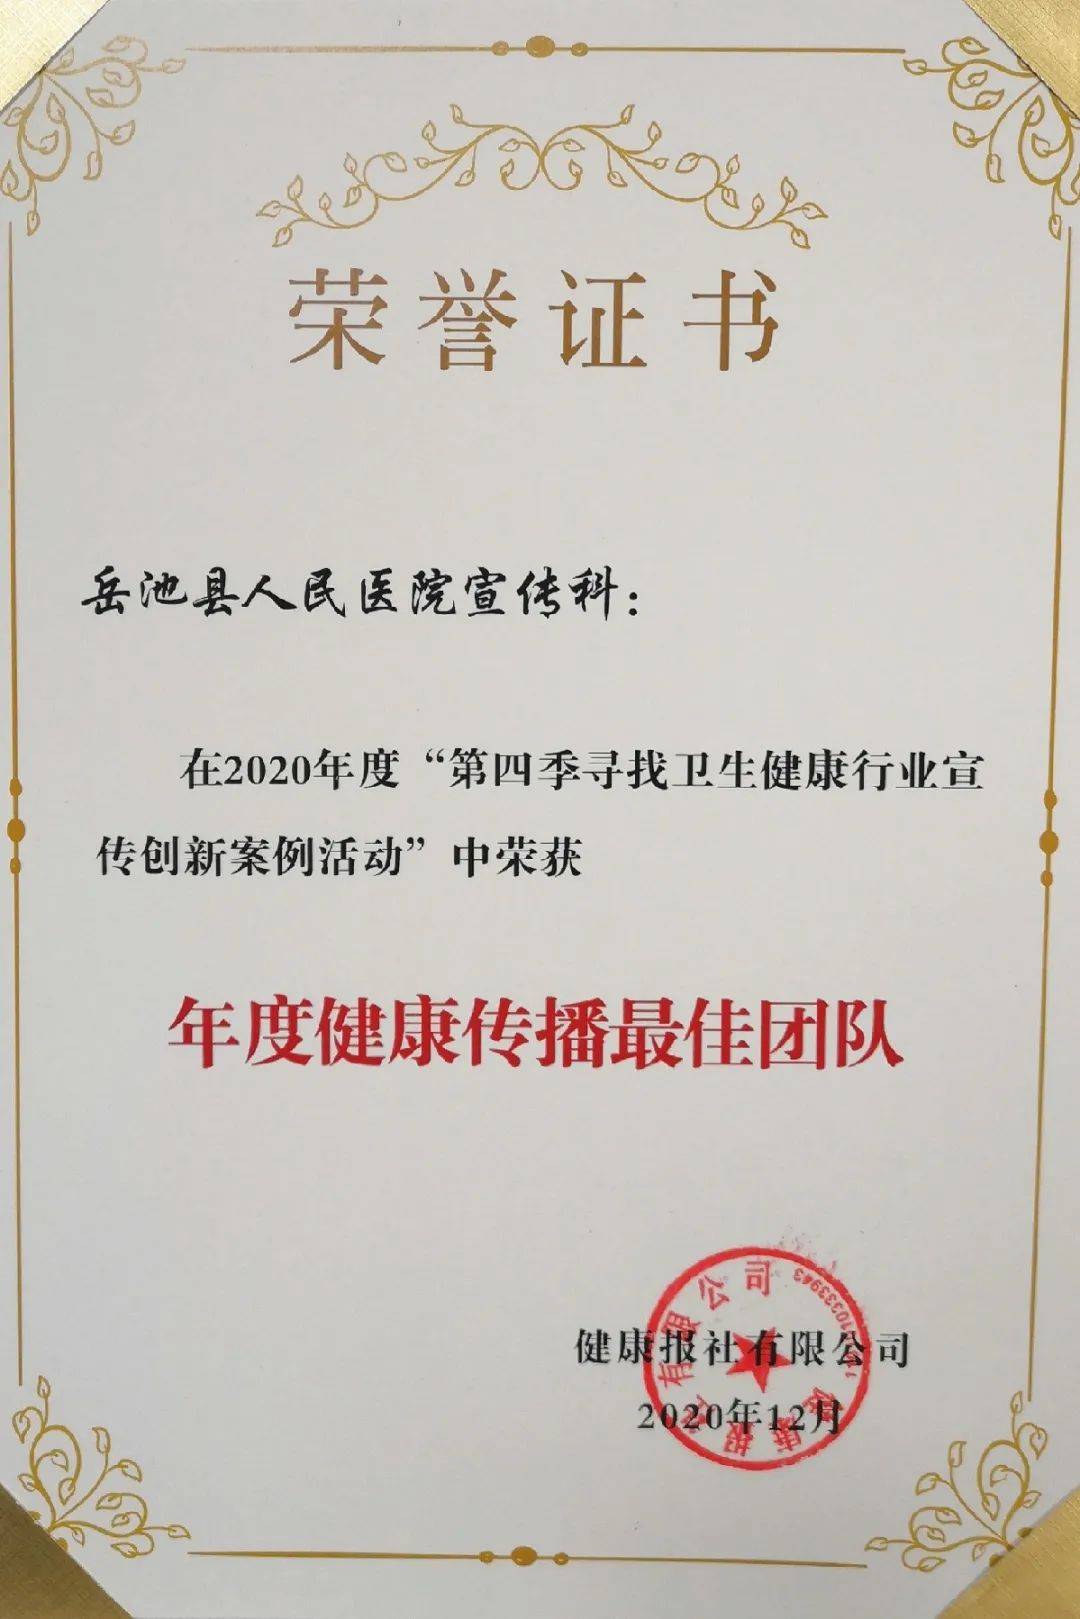 岳池县人民医院在第四届全国卫生健康品牌传播年会中喜获两项表彰